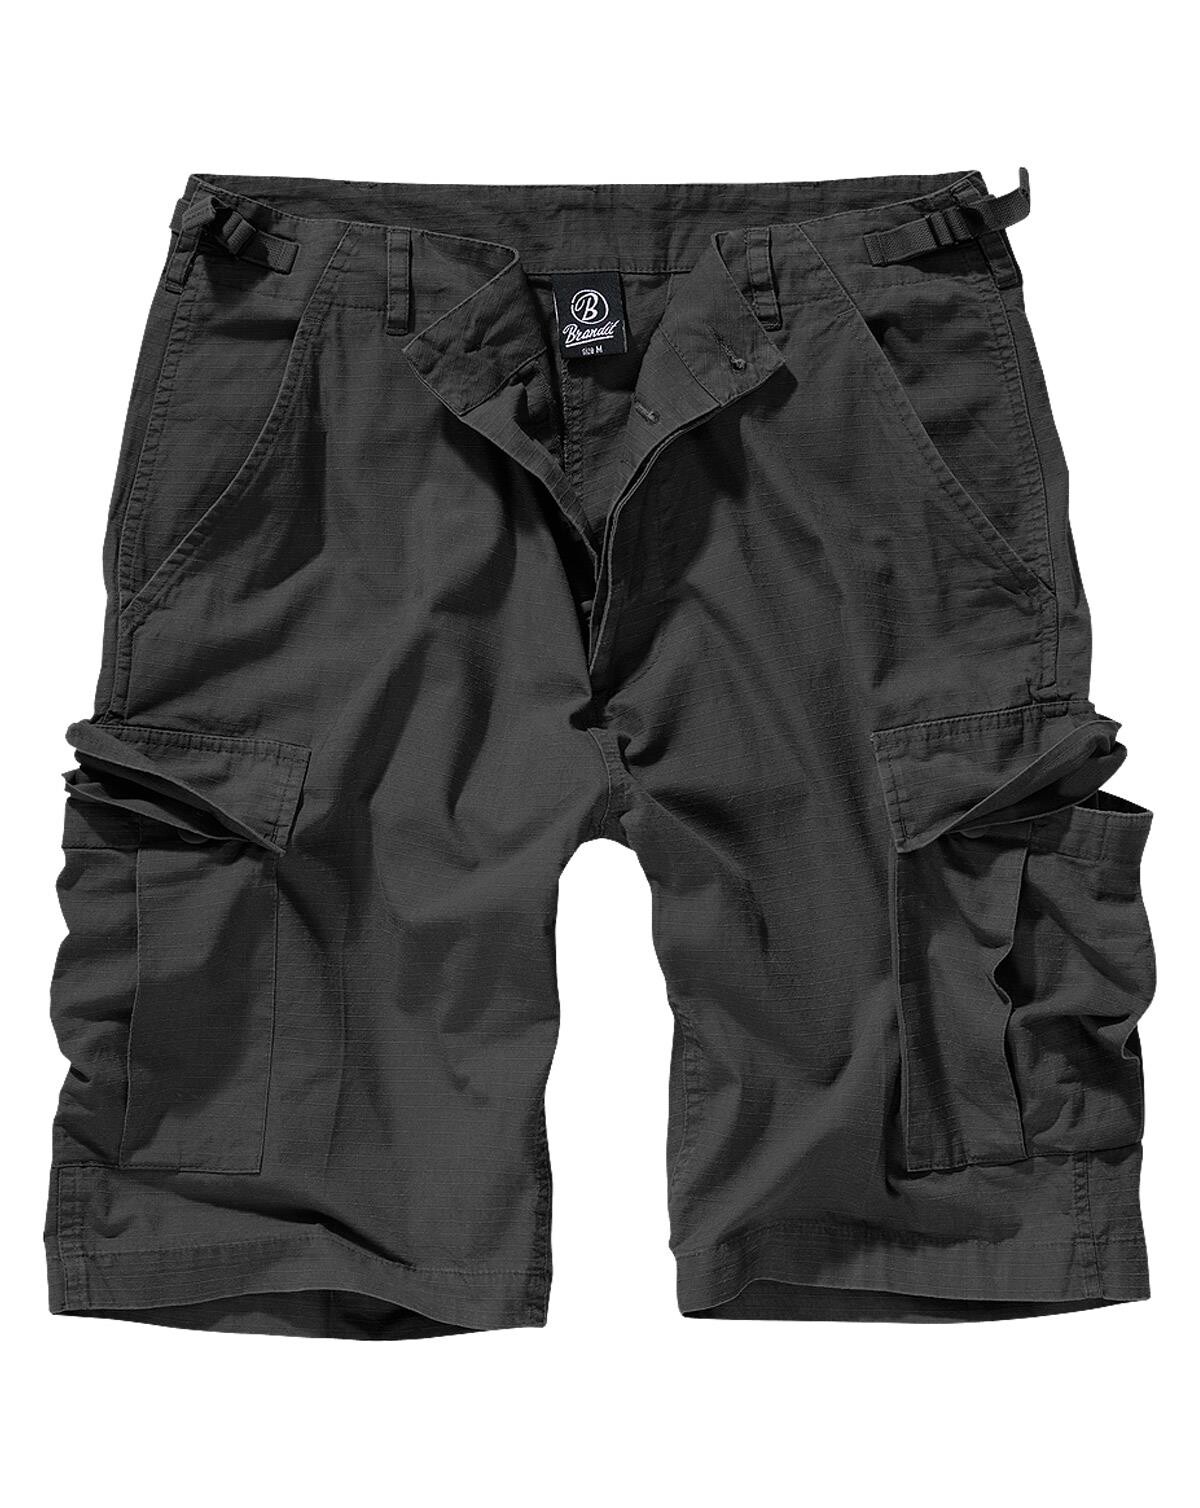 #3 - Brandit BDU Ripstop Shorts (Sort, S)